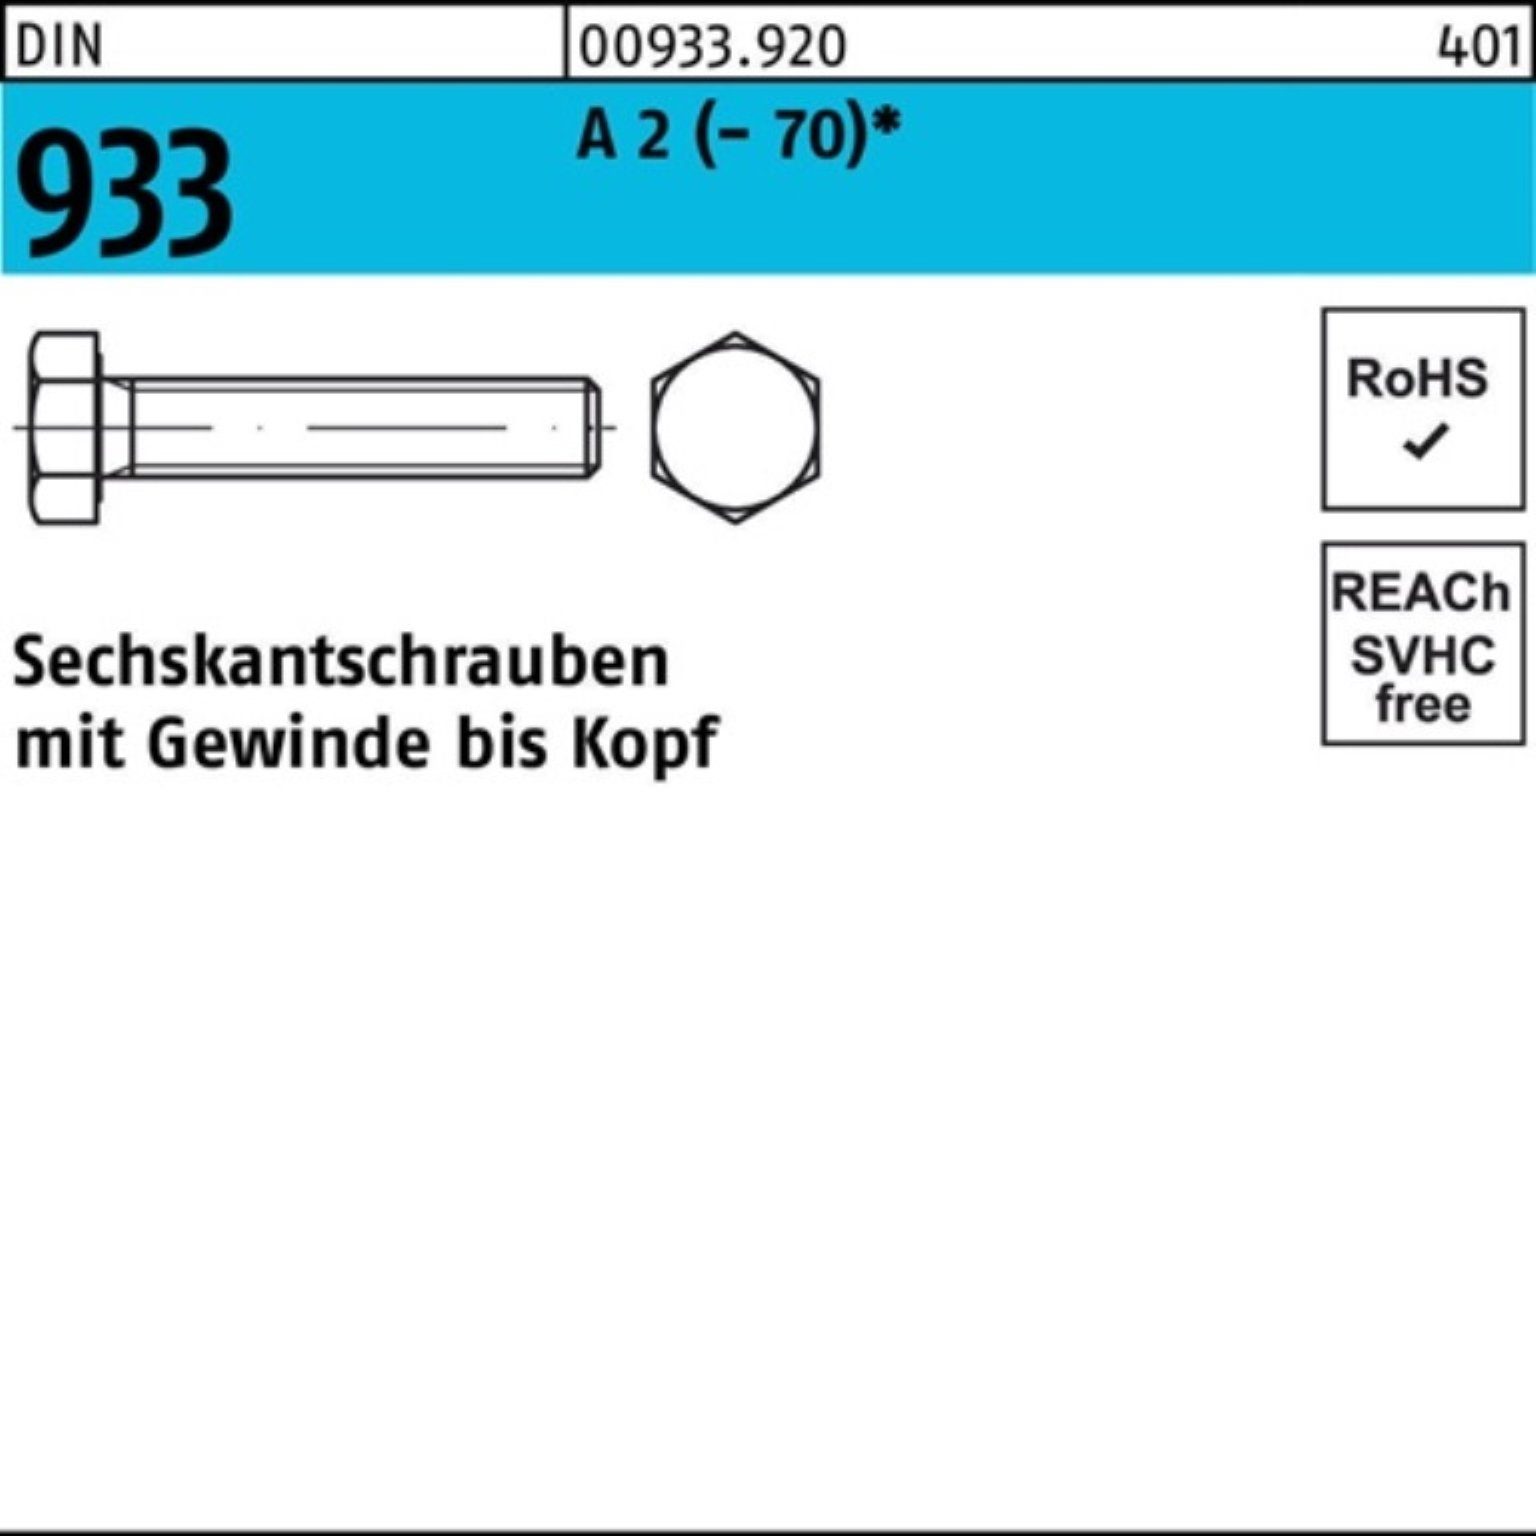 Reyher Sechskantschraube 200er Pack Sechskantschraube DIN 933 VG M4x 10 A 2 (70) 200 Stück D